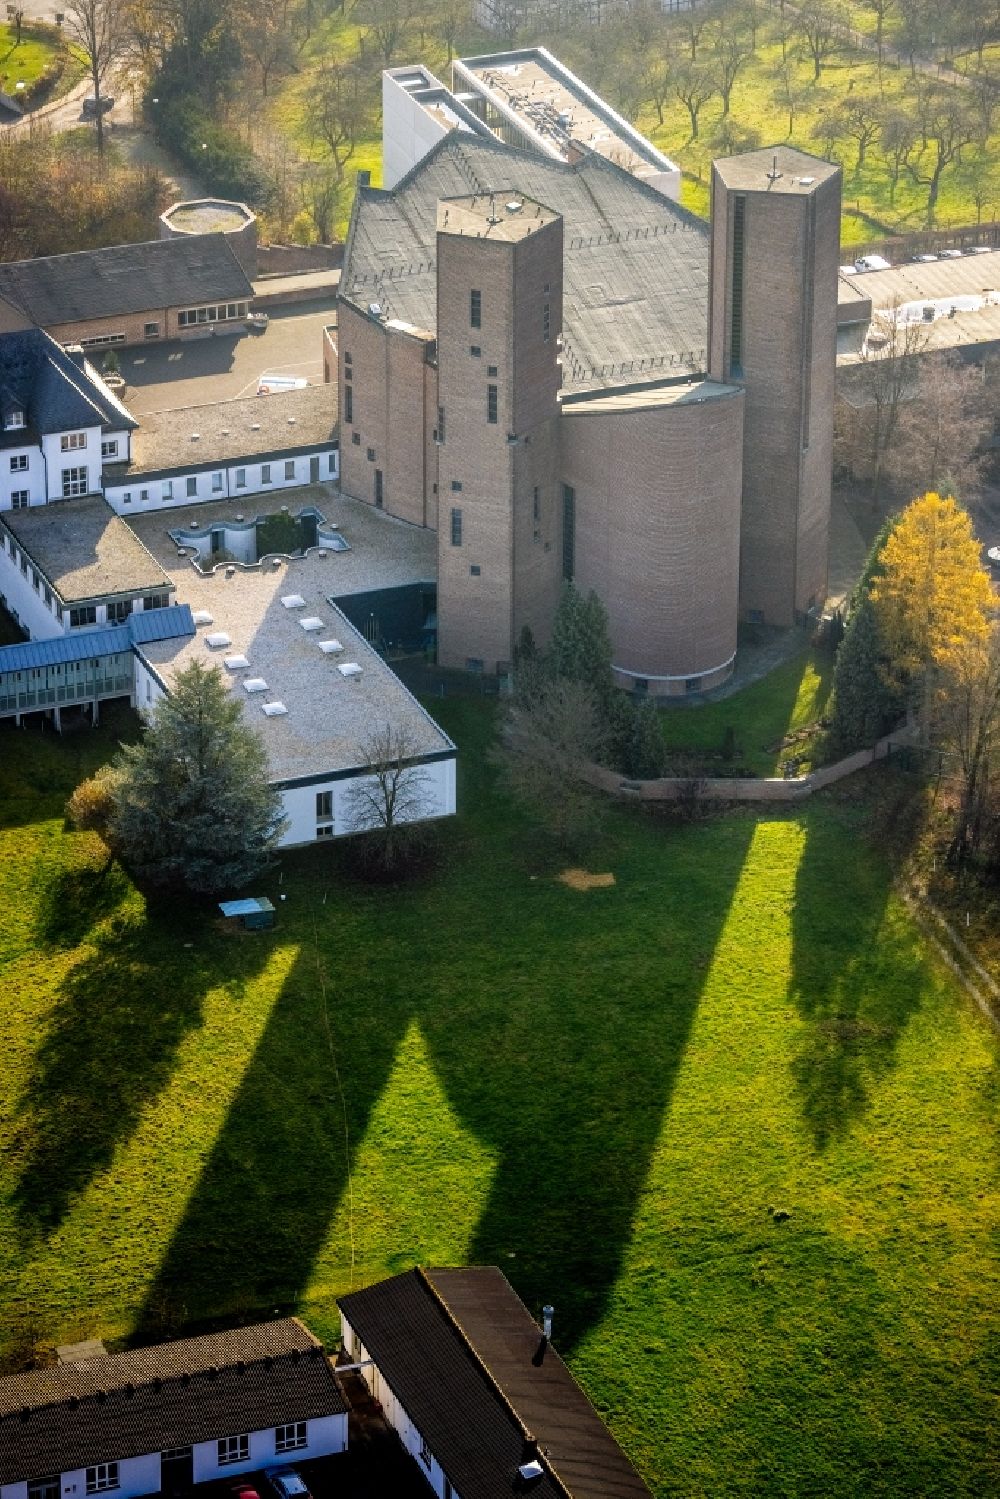 Luftbild Meschede - Gebäudekomplex des Klosters in Meschede im Bundesland Nordrhein-Westfalen, Deutschland